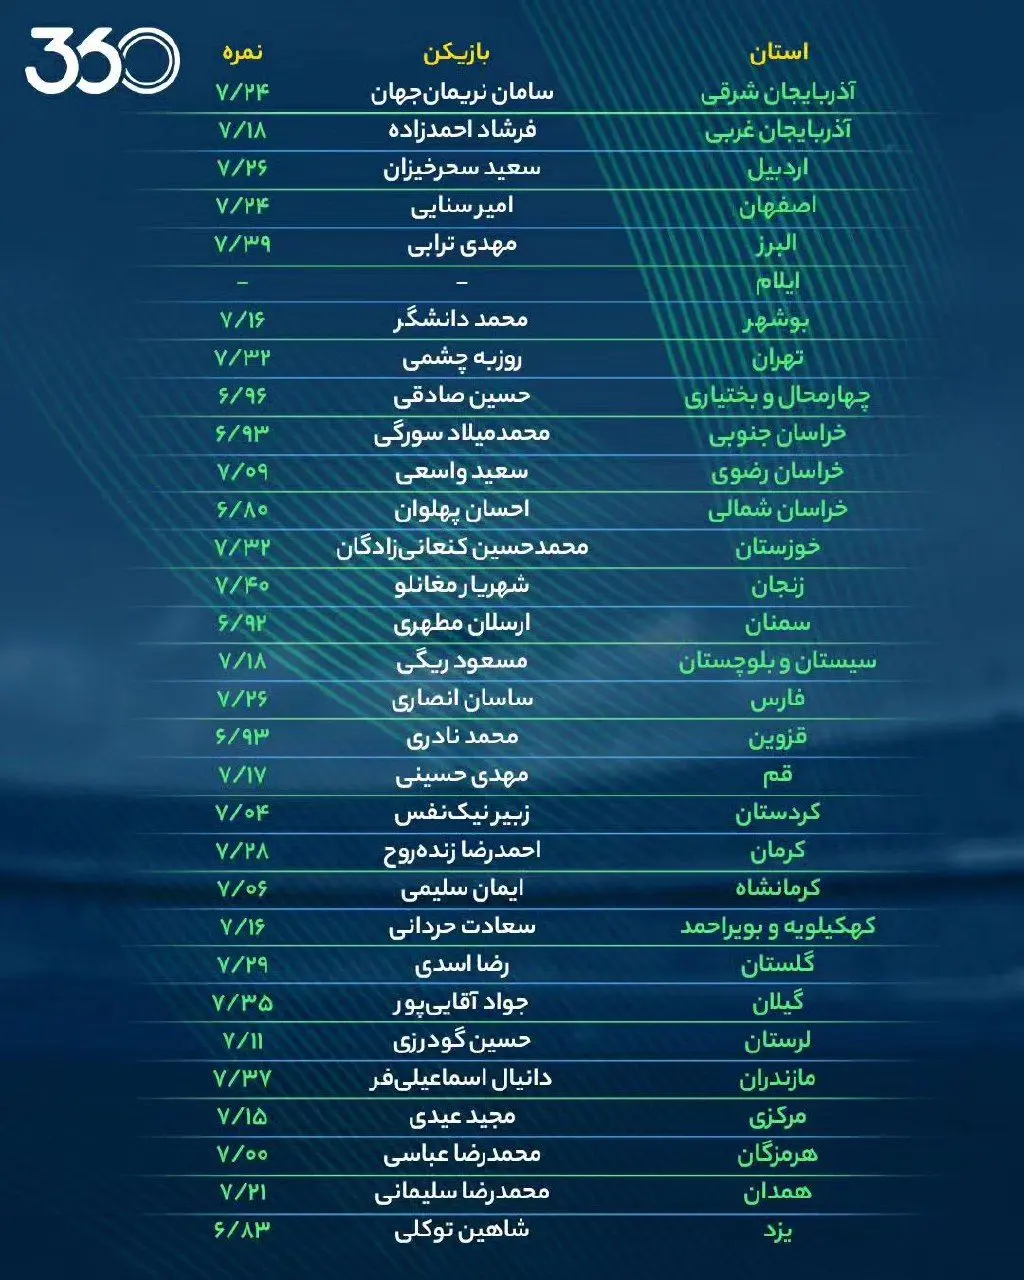 بهترین فوتبالیست هر استان ایران را بشناسید